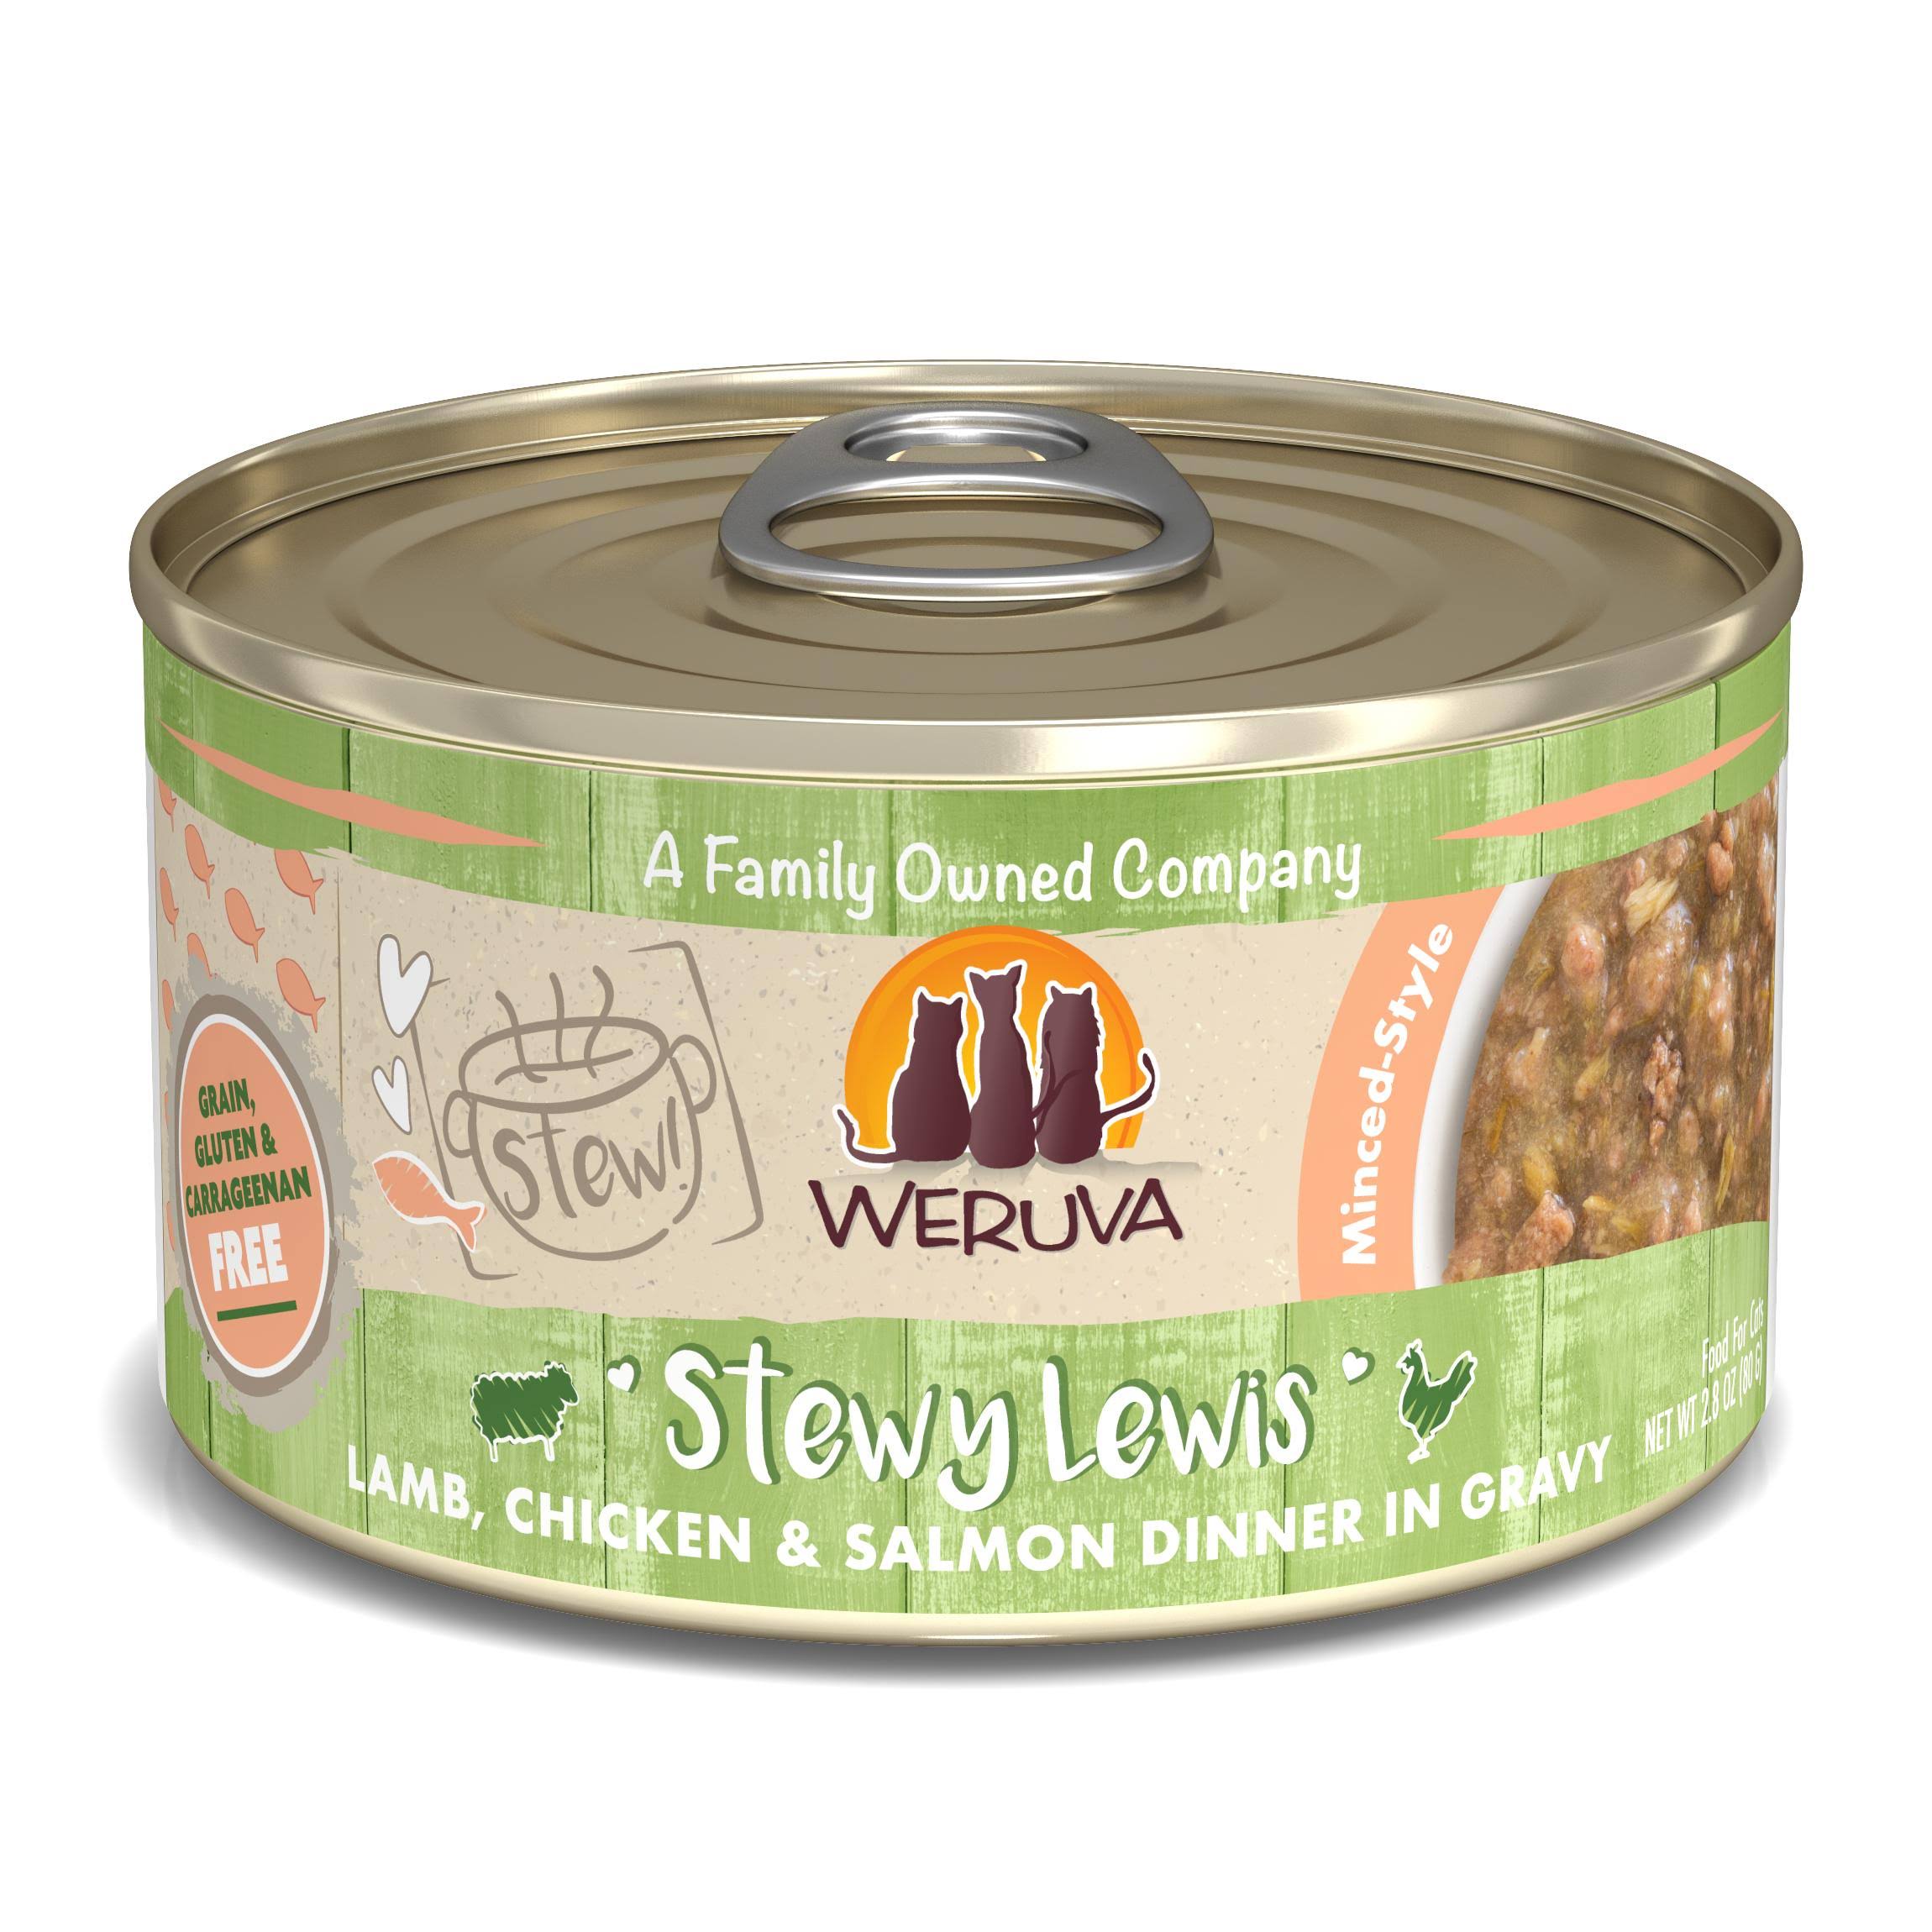 Weruva Cat Stew! Stewy Lewis Lamb, Chicken & Salmon 2.8oz